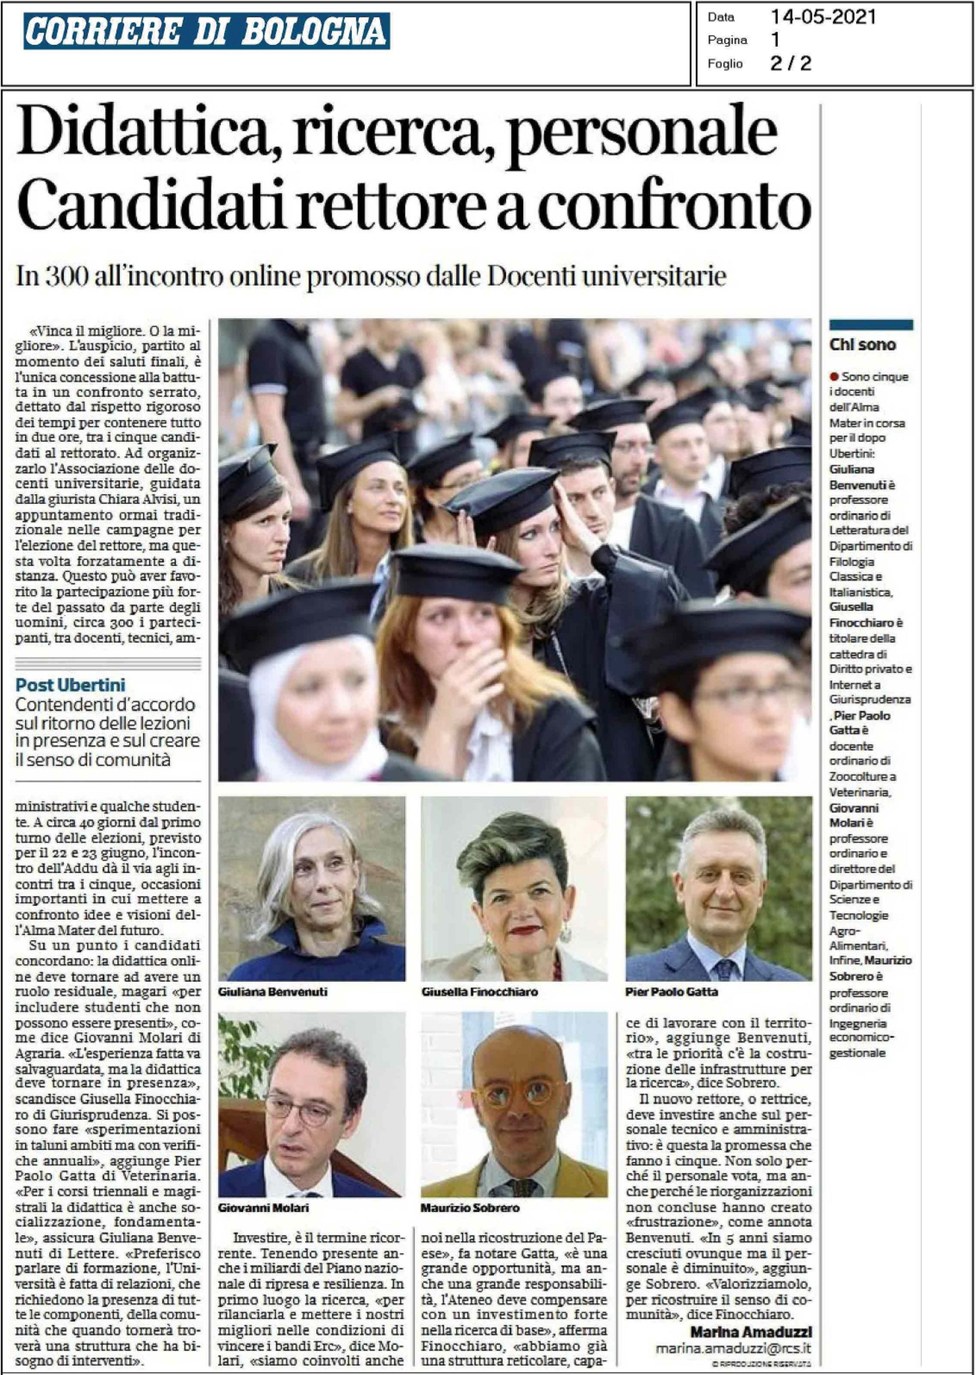 Articolo della giornalista Marina Amaduzzi sul "Corriere di Bologna" del 14 maggio 2021